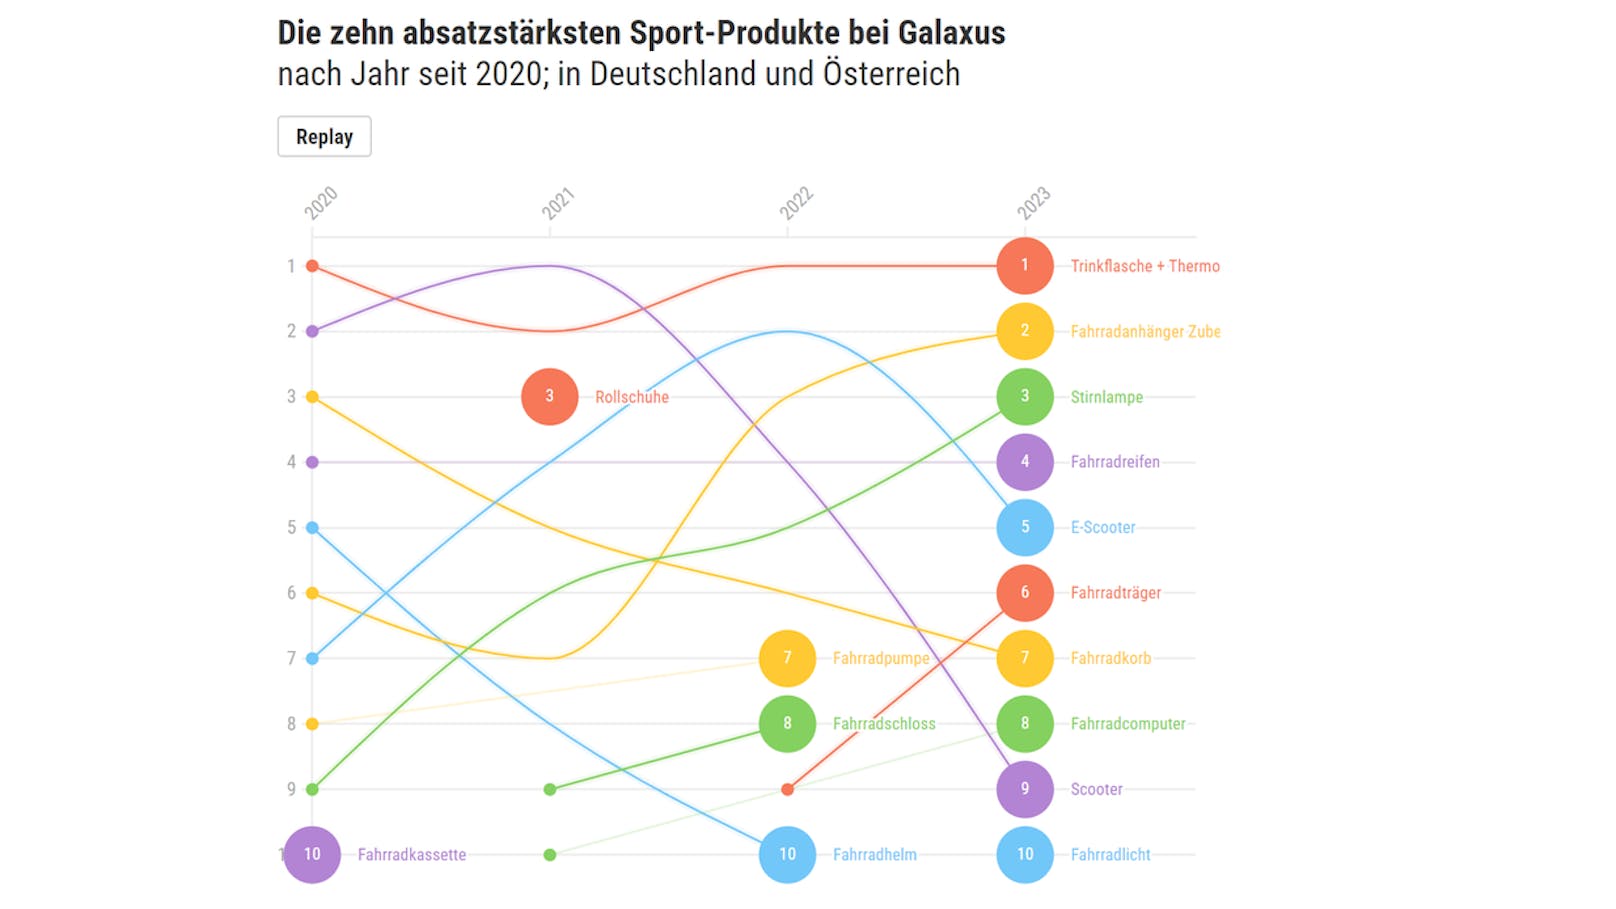 Die zehn absatzstärksten Sport-Produkte bei Galaxus.